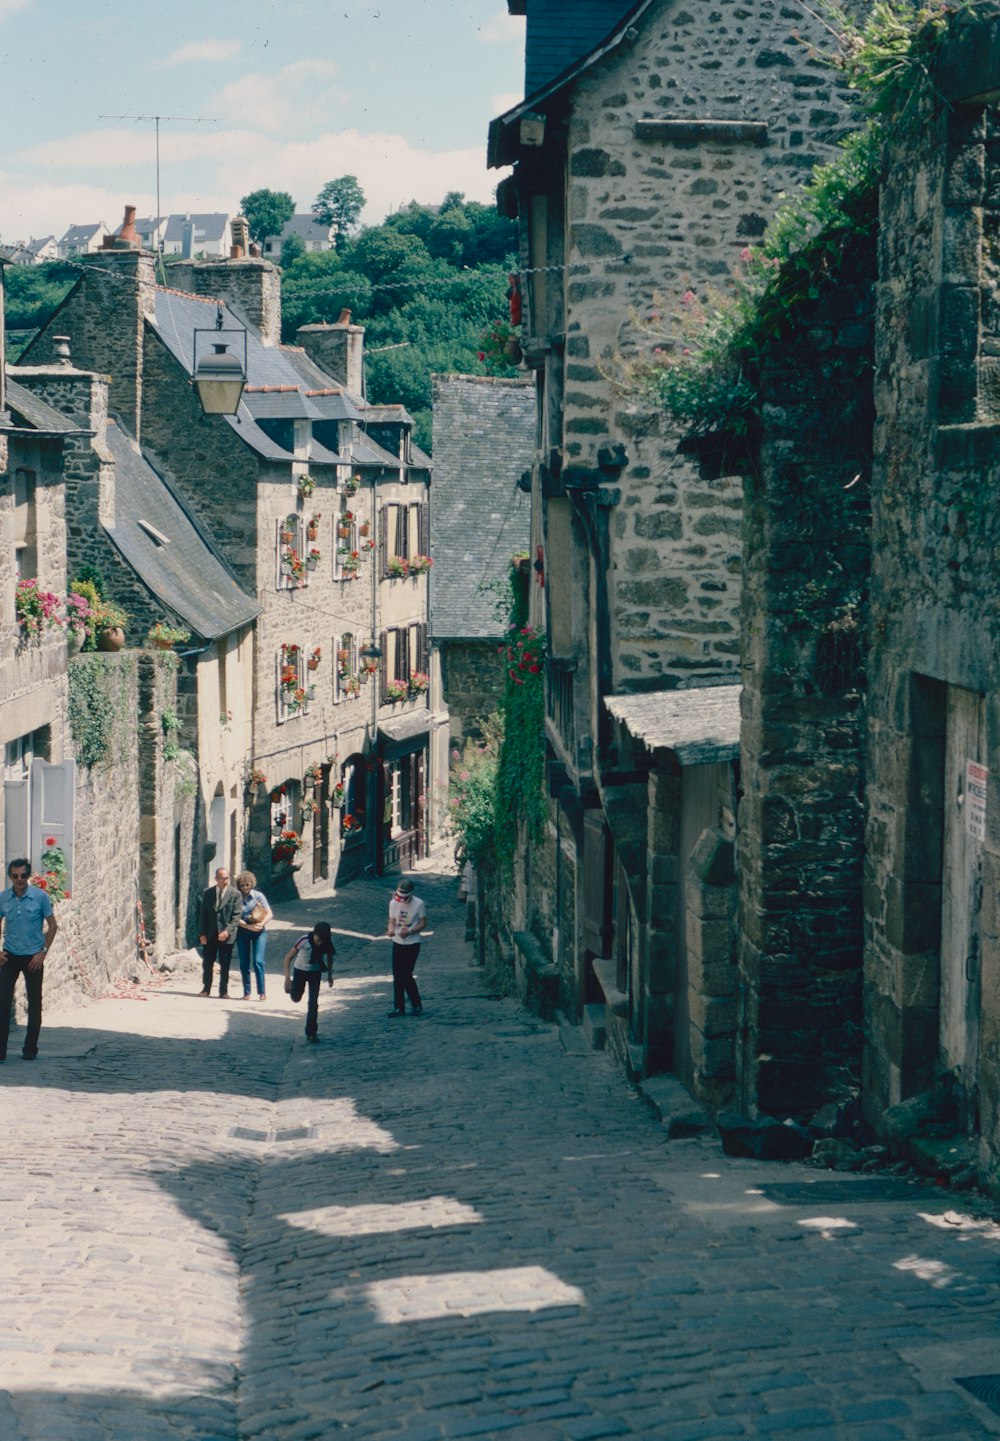 people walking on a stone street